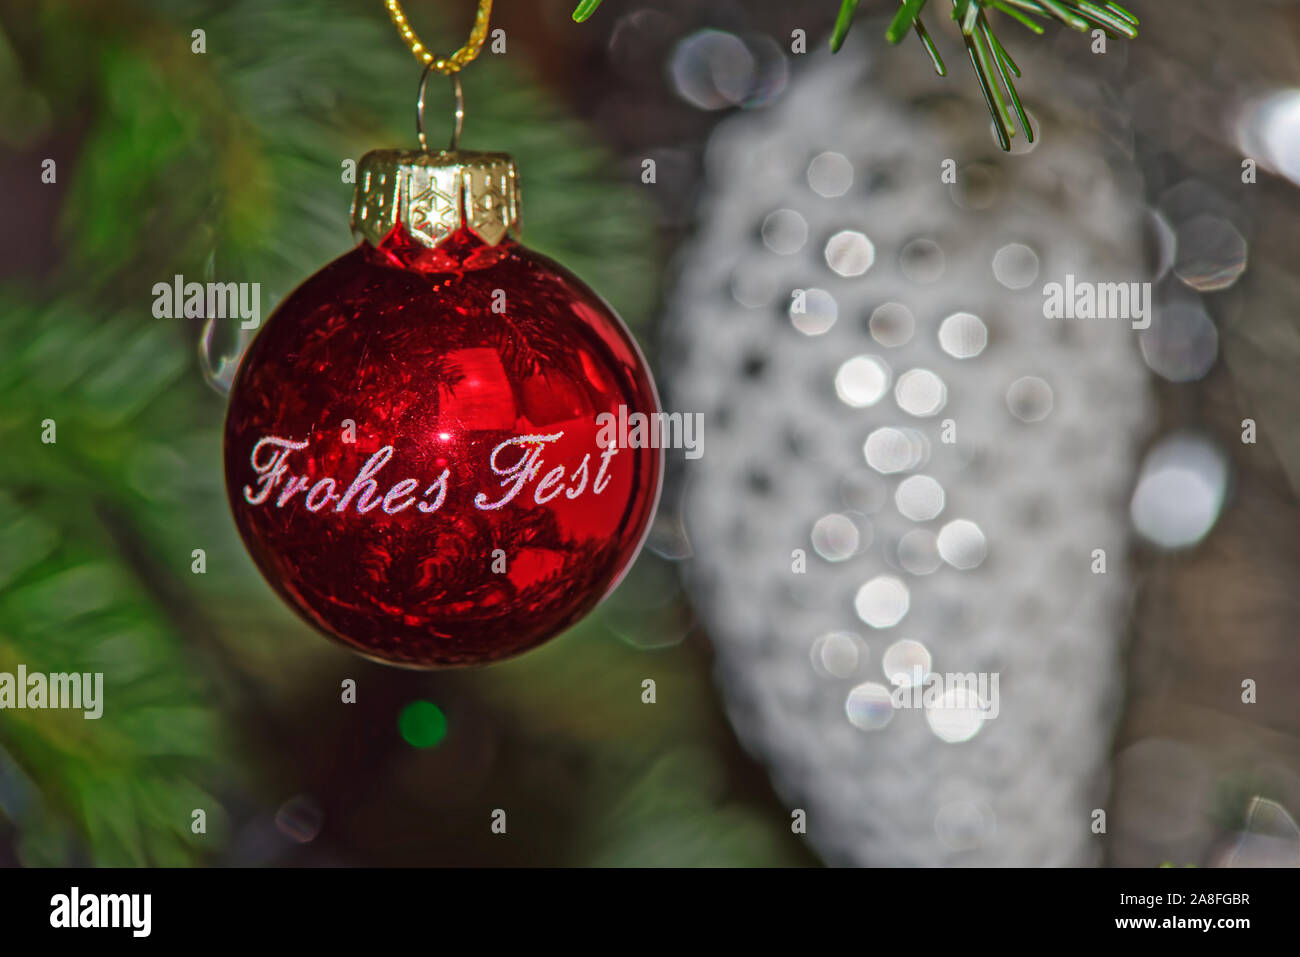 Boule de Noël rouge avec Happy Holiday texte en allemand contre blurred Christmas decoration Banque D'Images